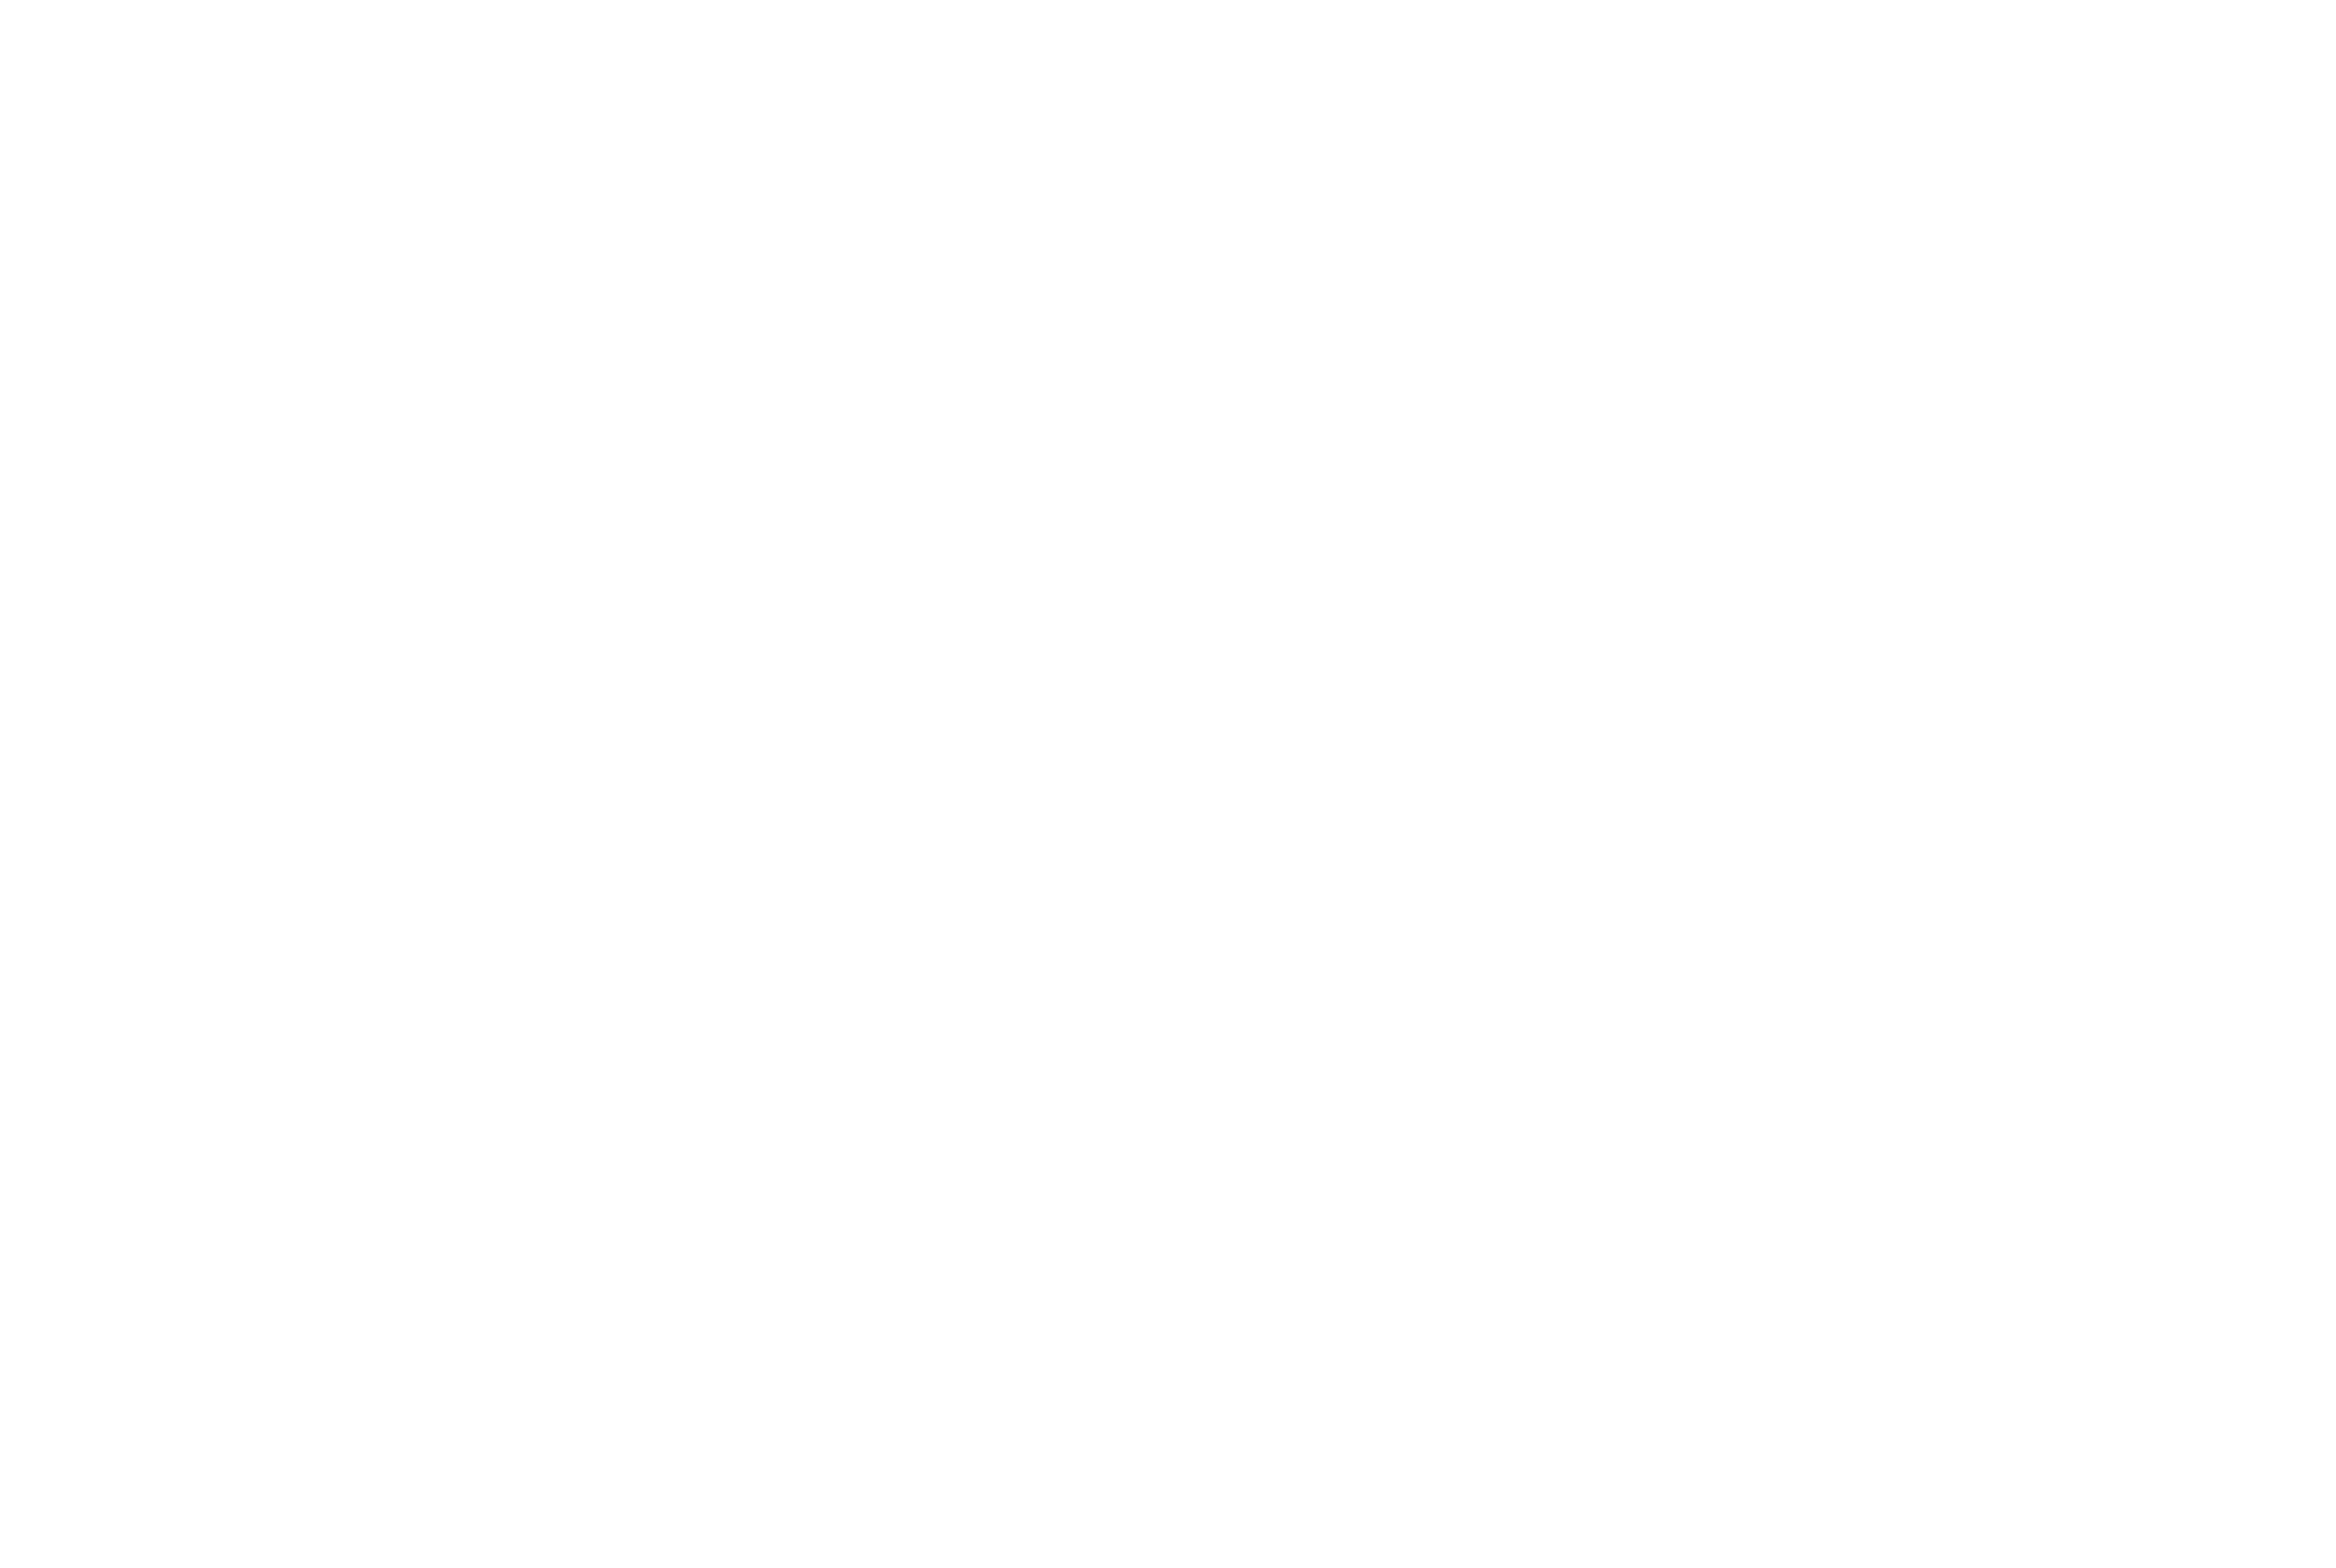 Marco Parodi